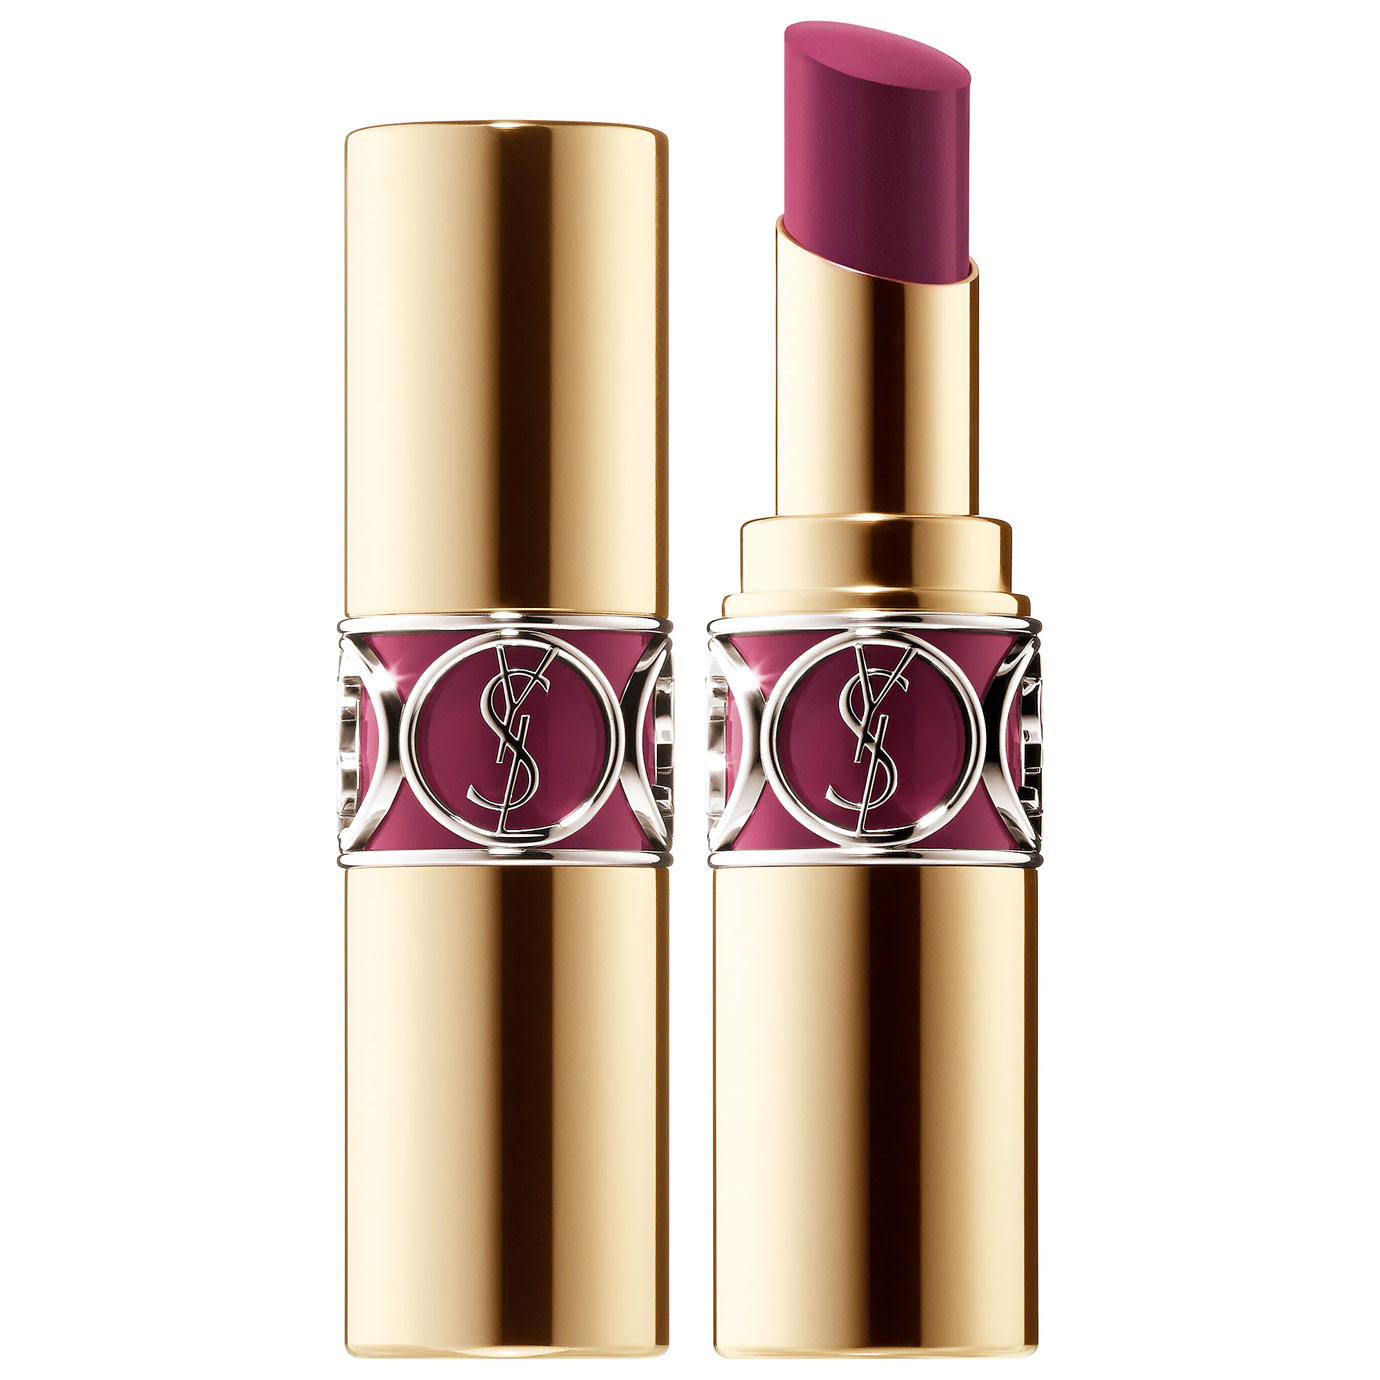 YSL Rouge Volupte Shine Lipstick Balm in Medium Plum.